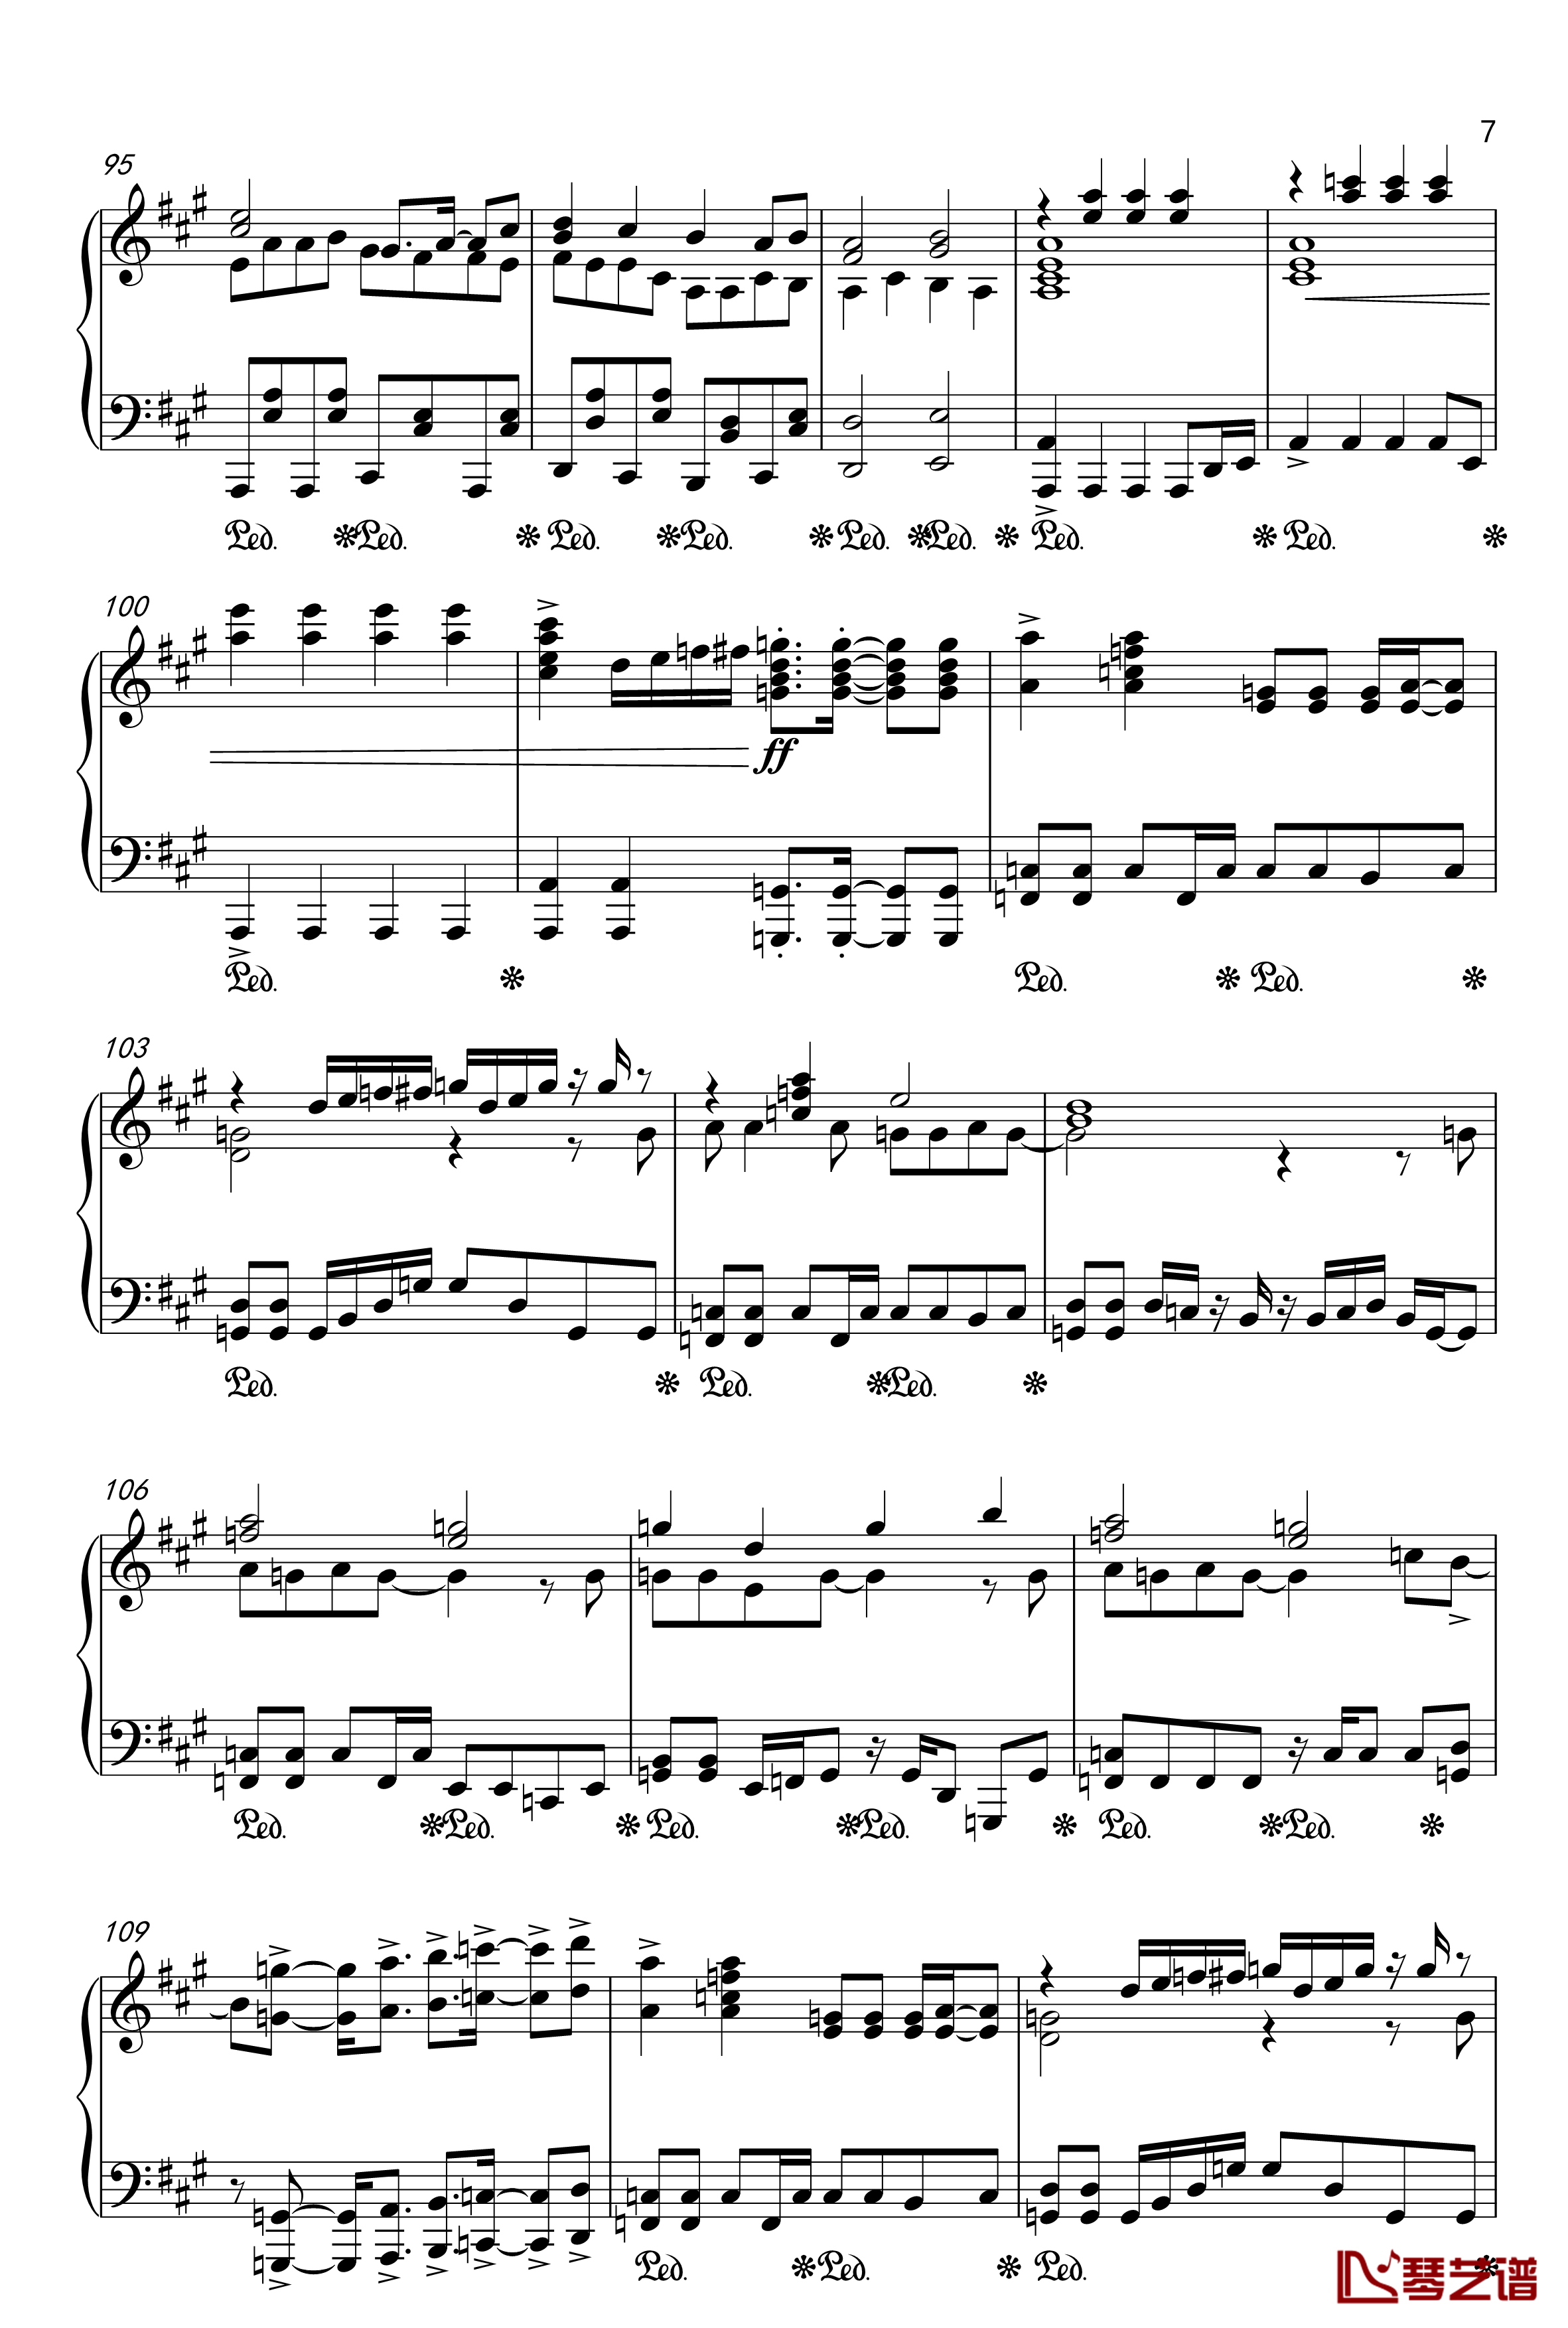 目标是神奇宝贝大师钢琴谱-20周年纪念版7